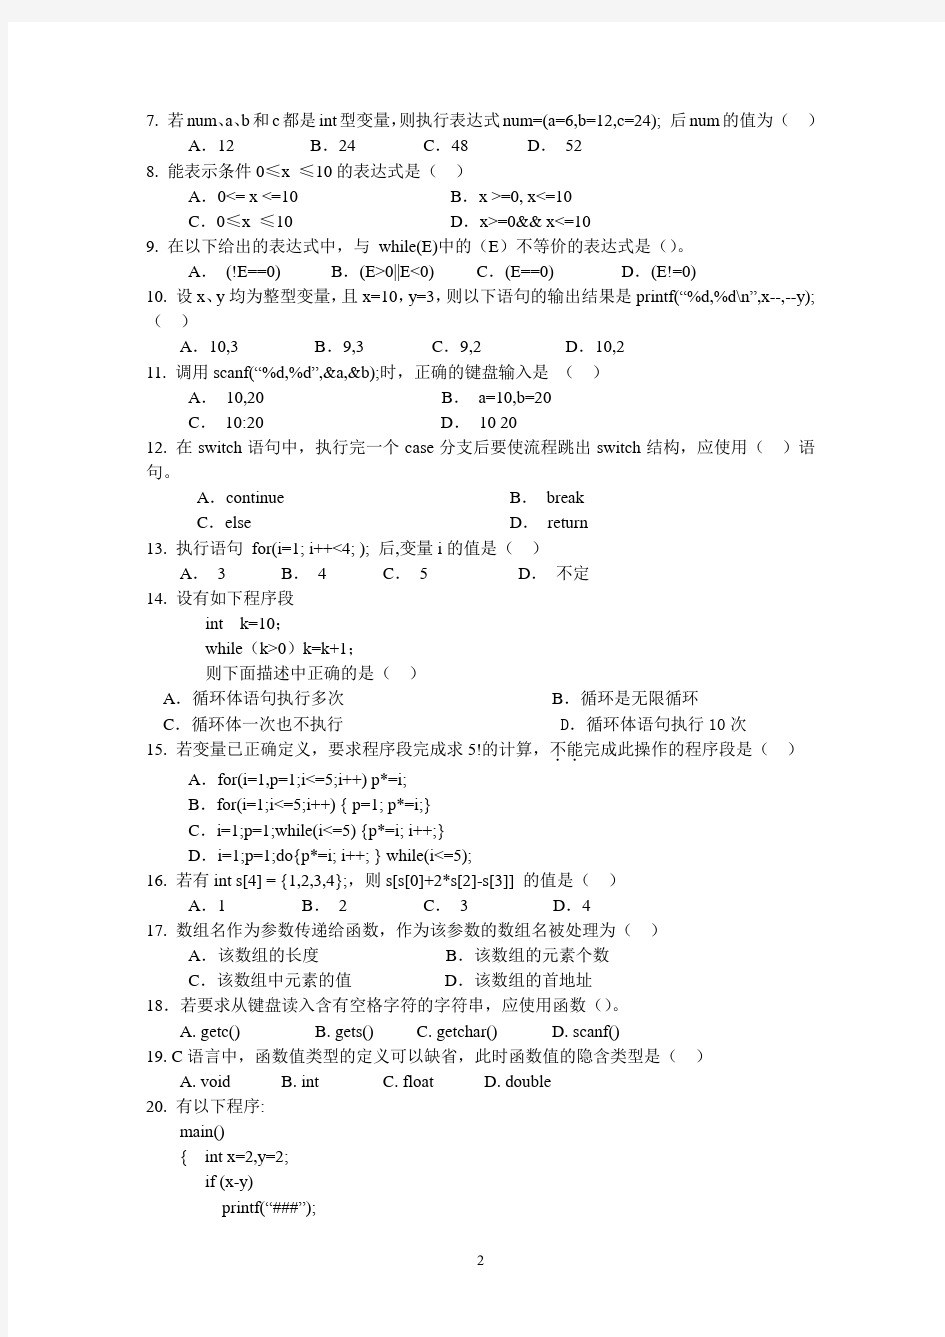 华农-2008第二学期 程序设计 语言A试卷